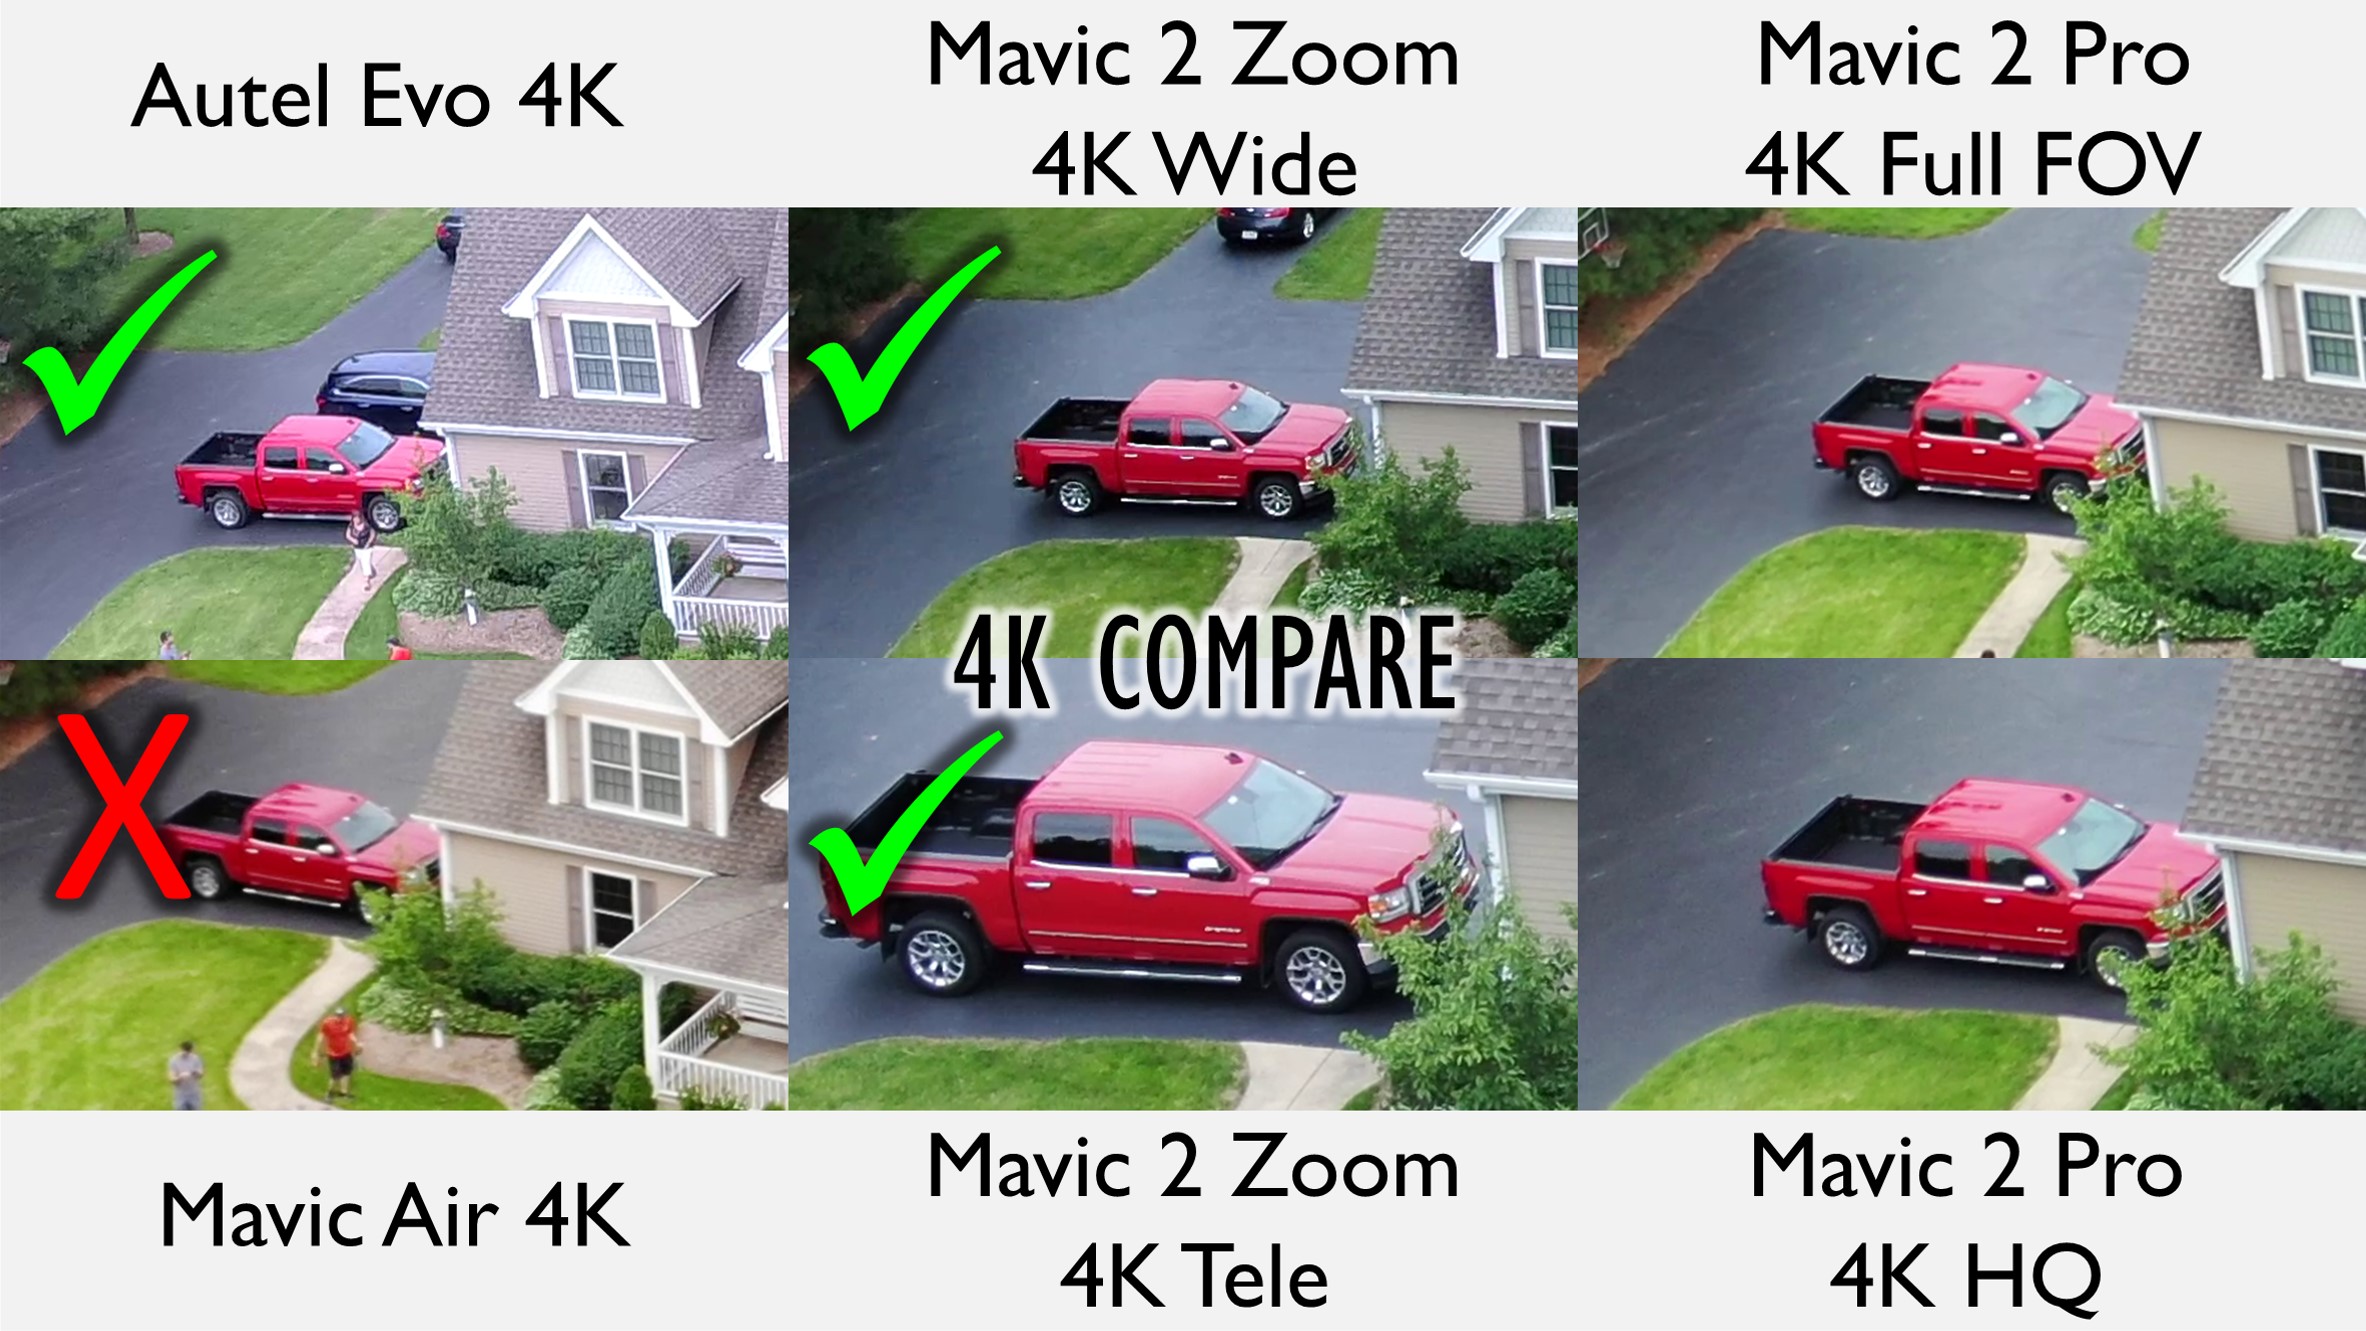 4K Comparison of Mavic Air, Mavic 2, and Autel Evo